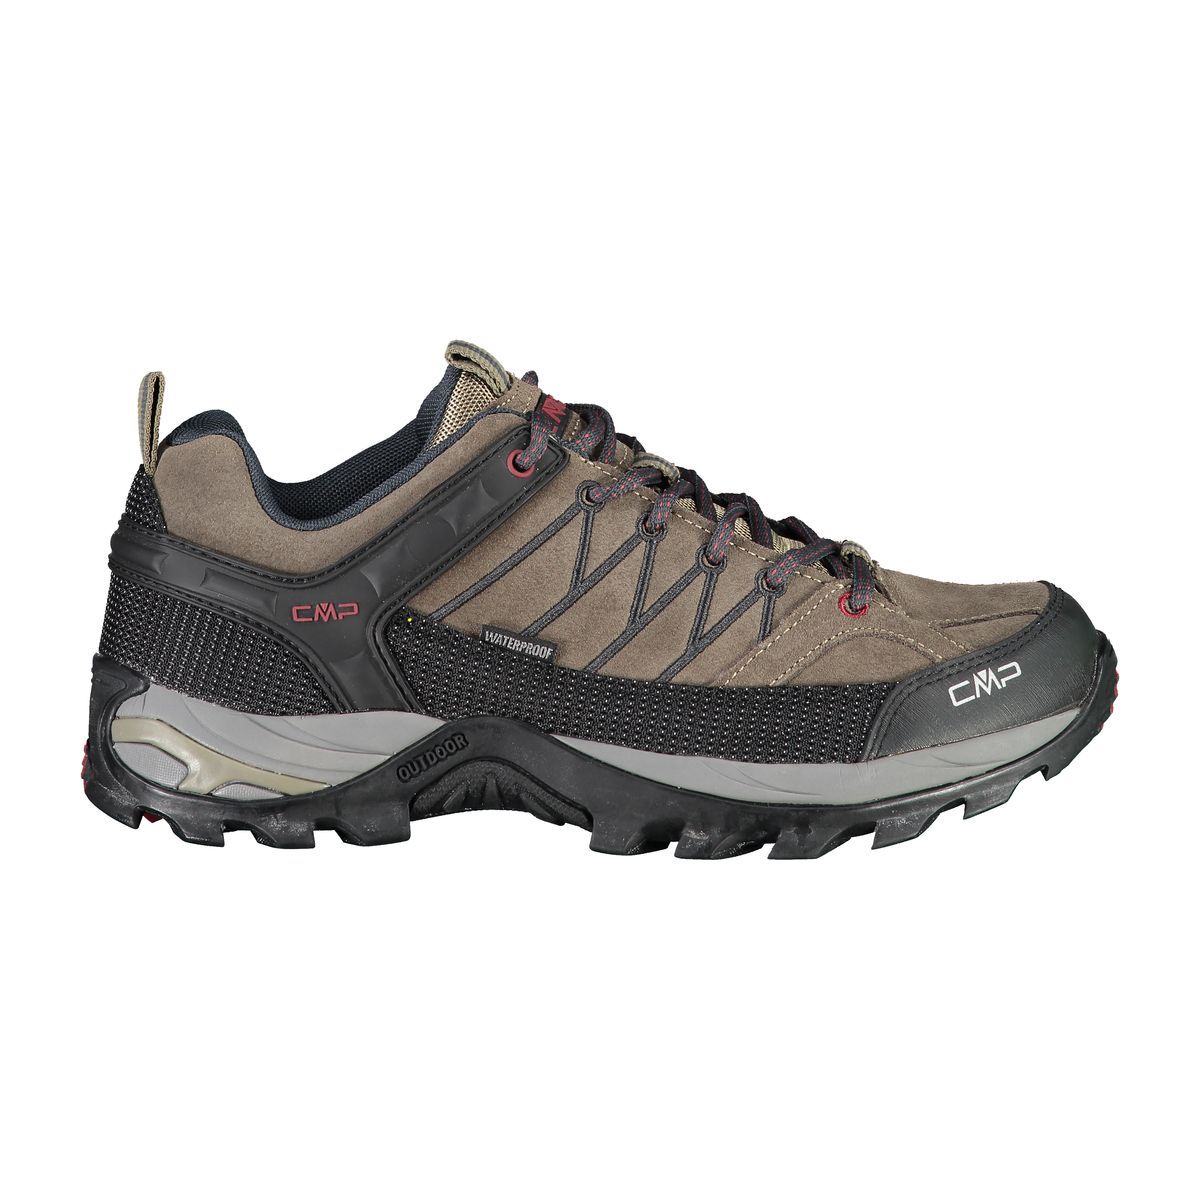 CMP Rigel Low Trekking Shoes waterproof Herren Trekking-Halbschuhe